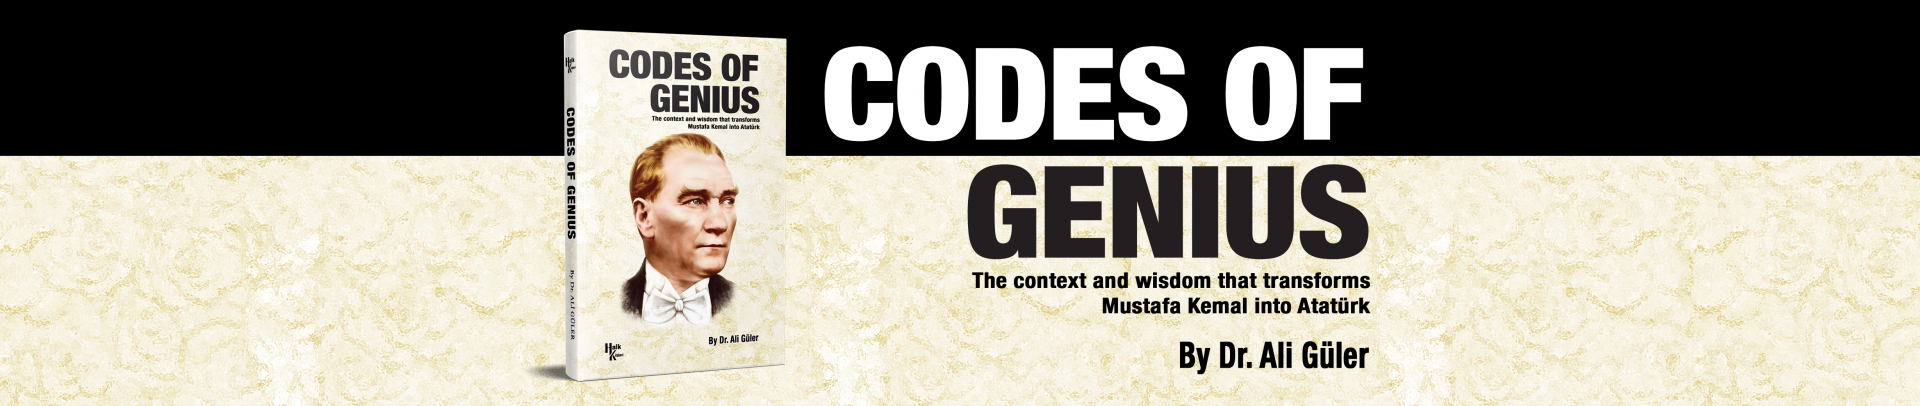 Codes of the Genius